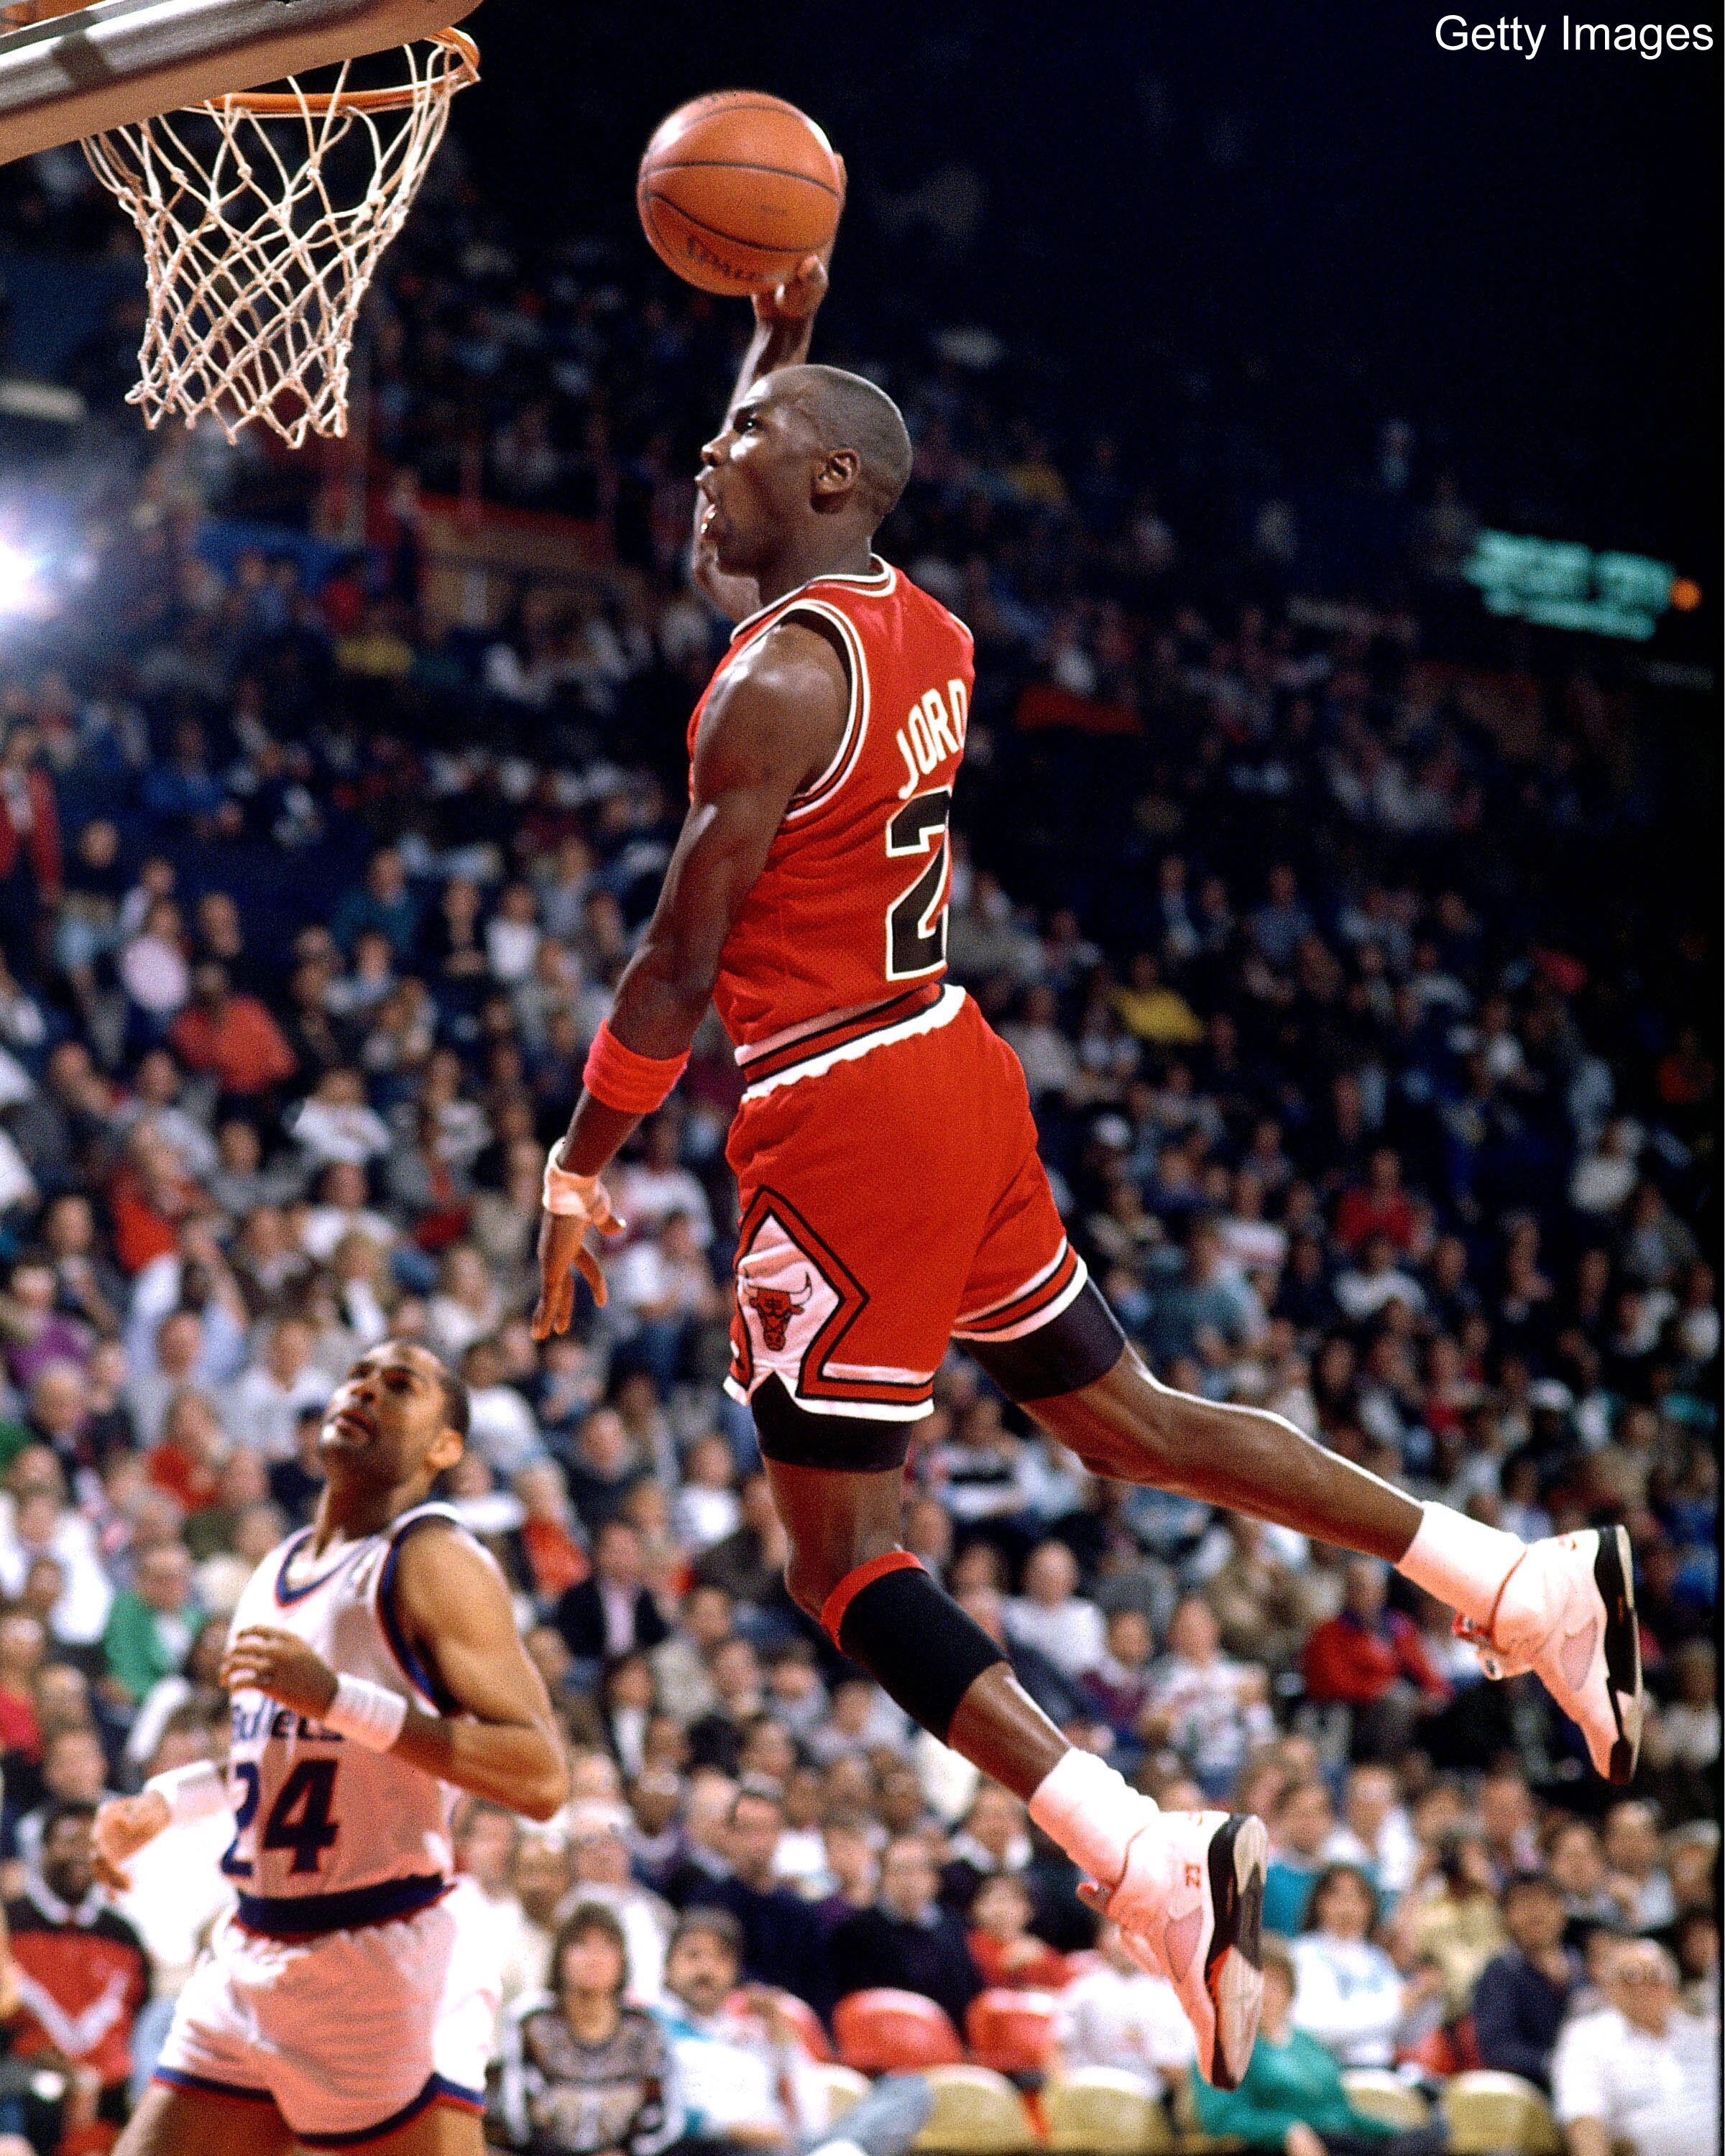 1993: Michael Jordan Scored His 